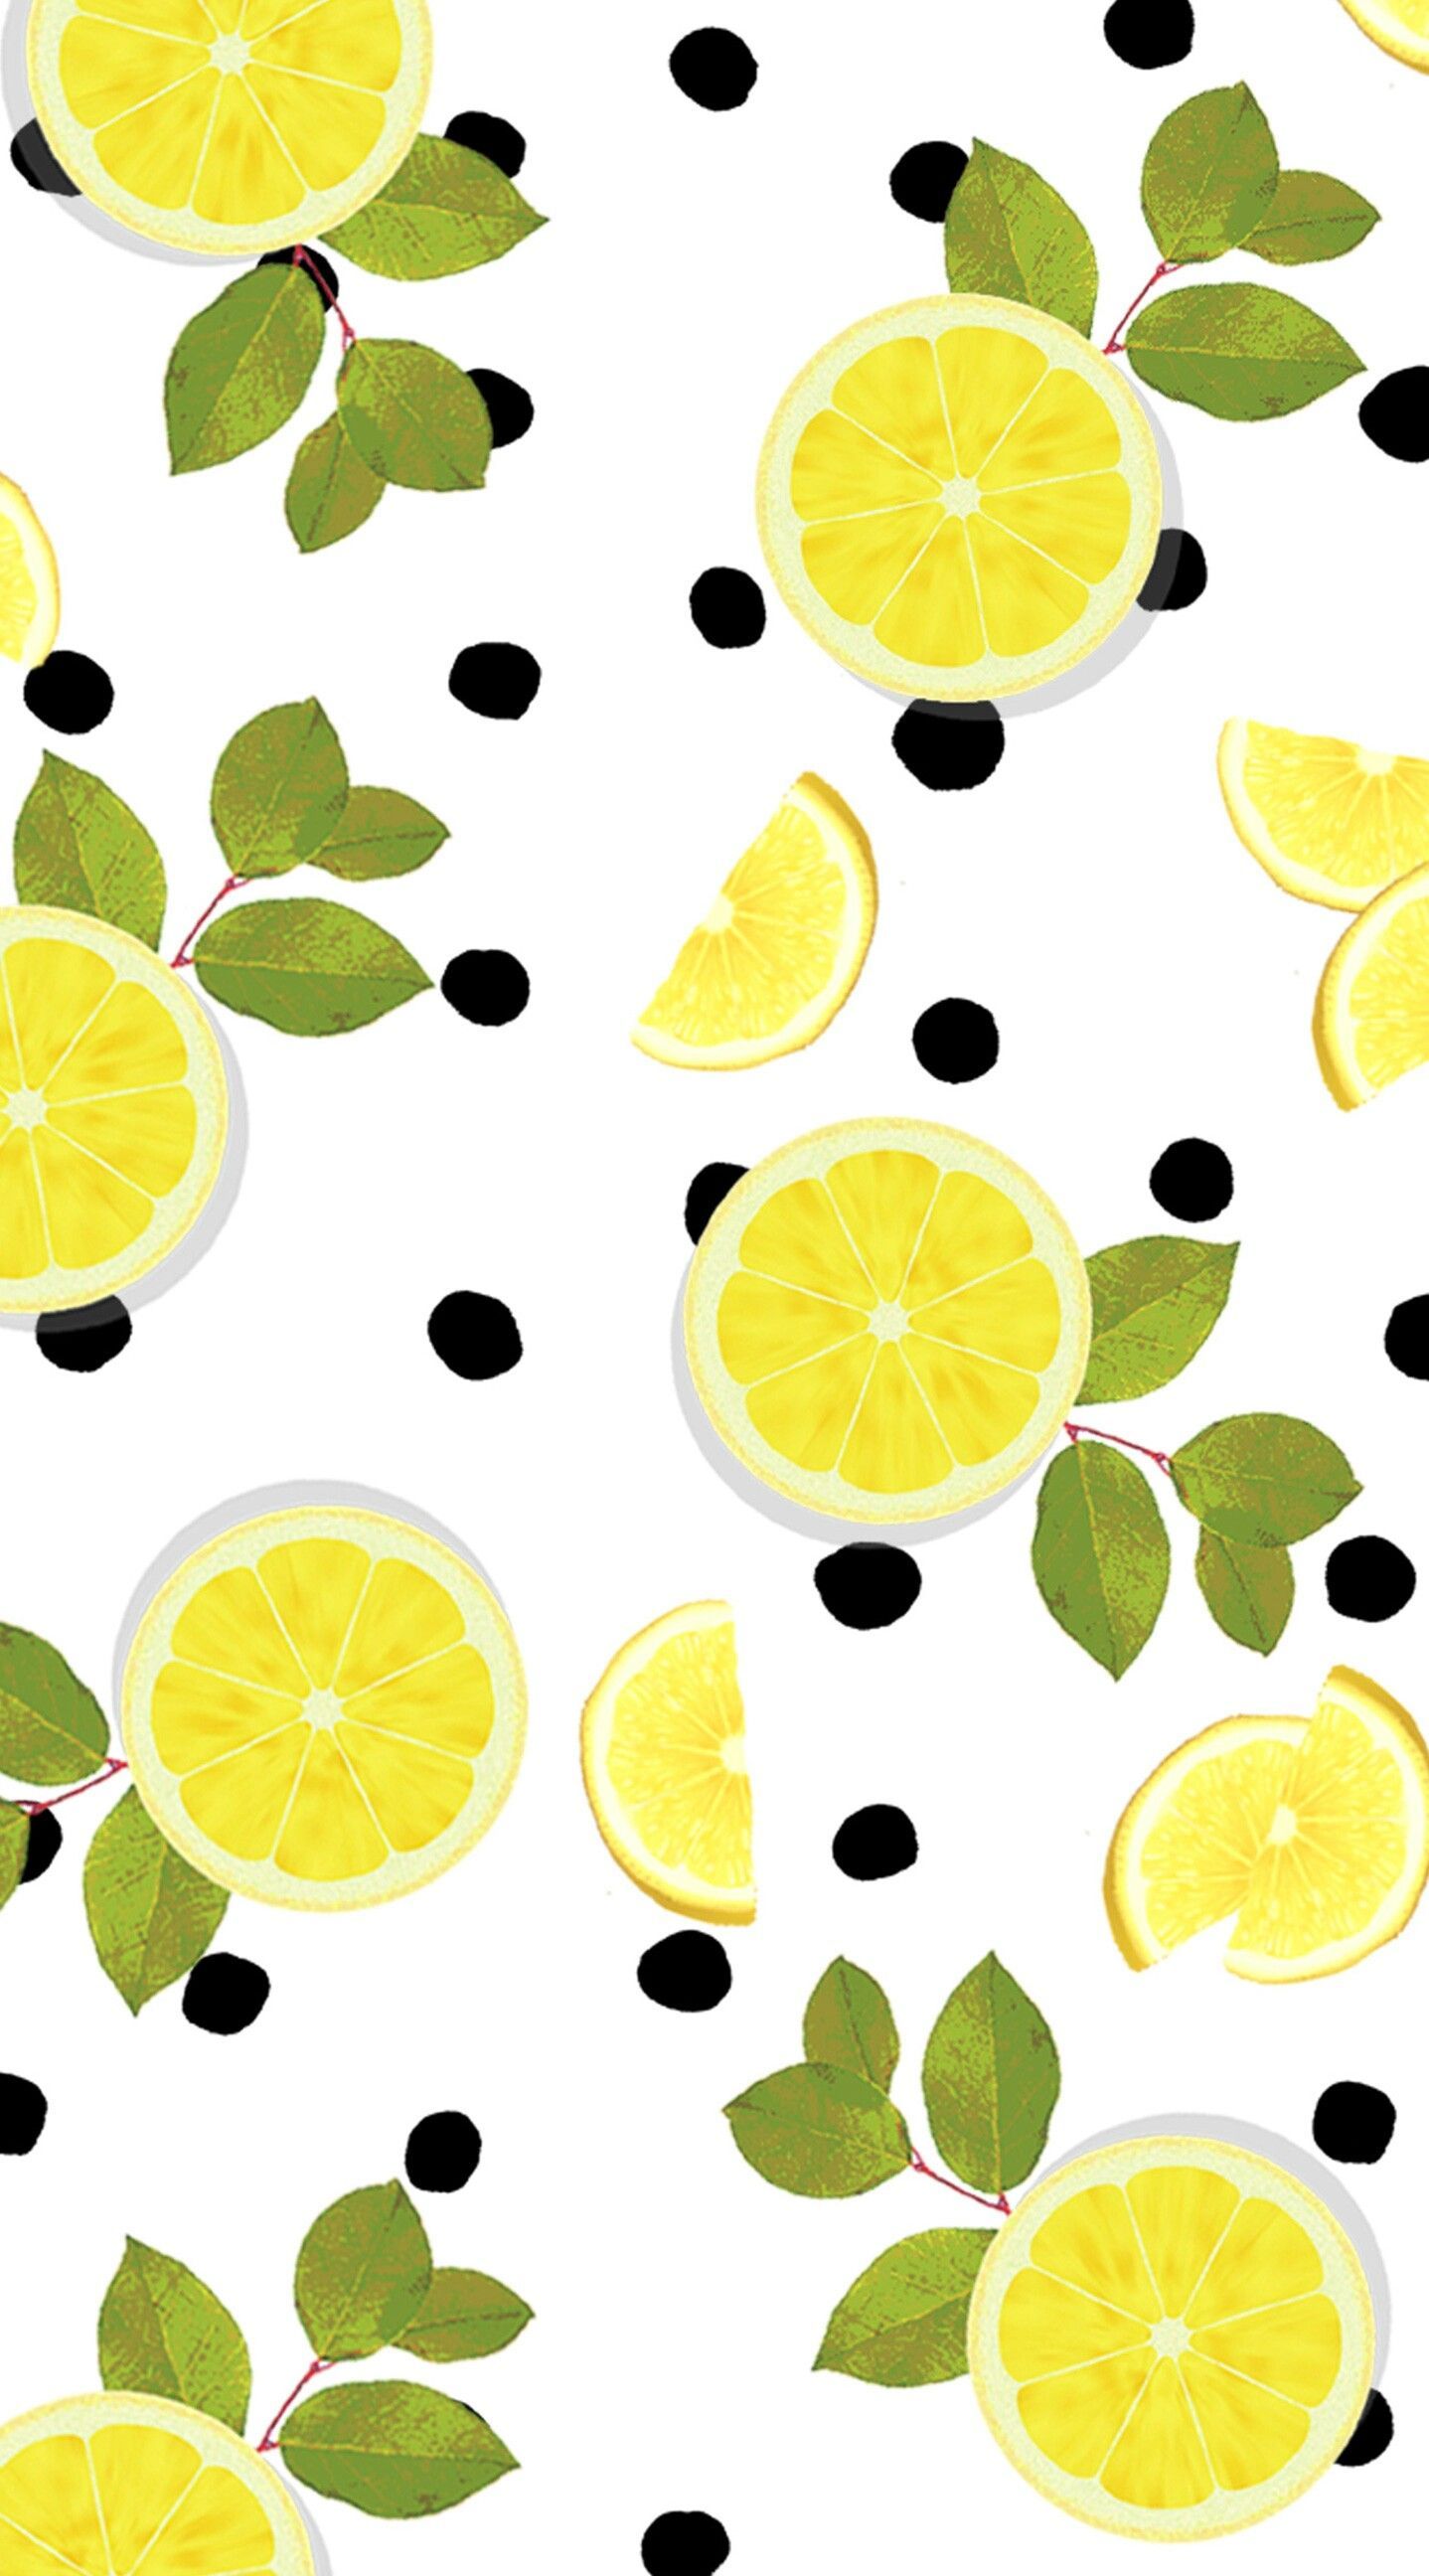 26+] Lemon Backgrounds - WallpaperSafari